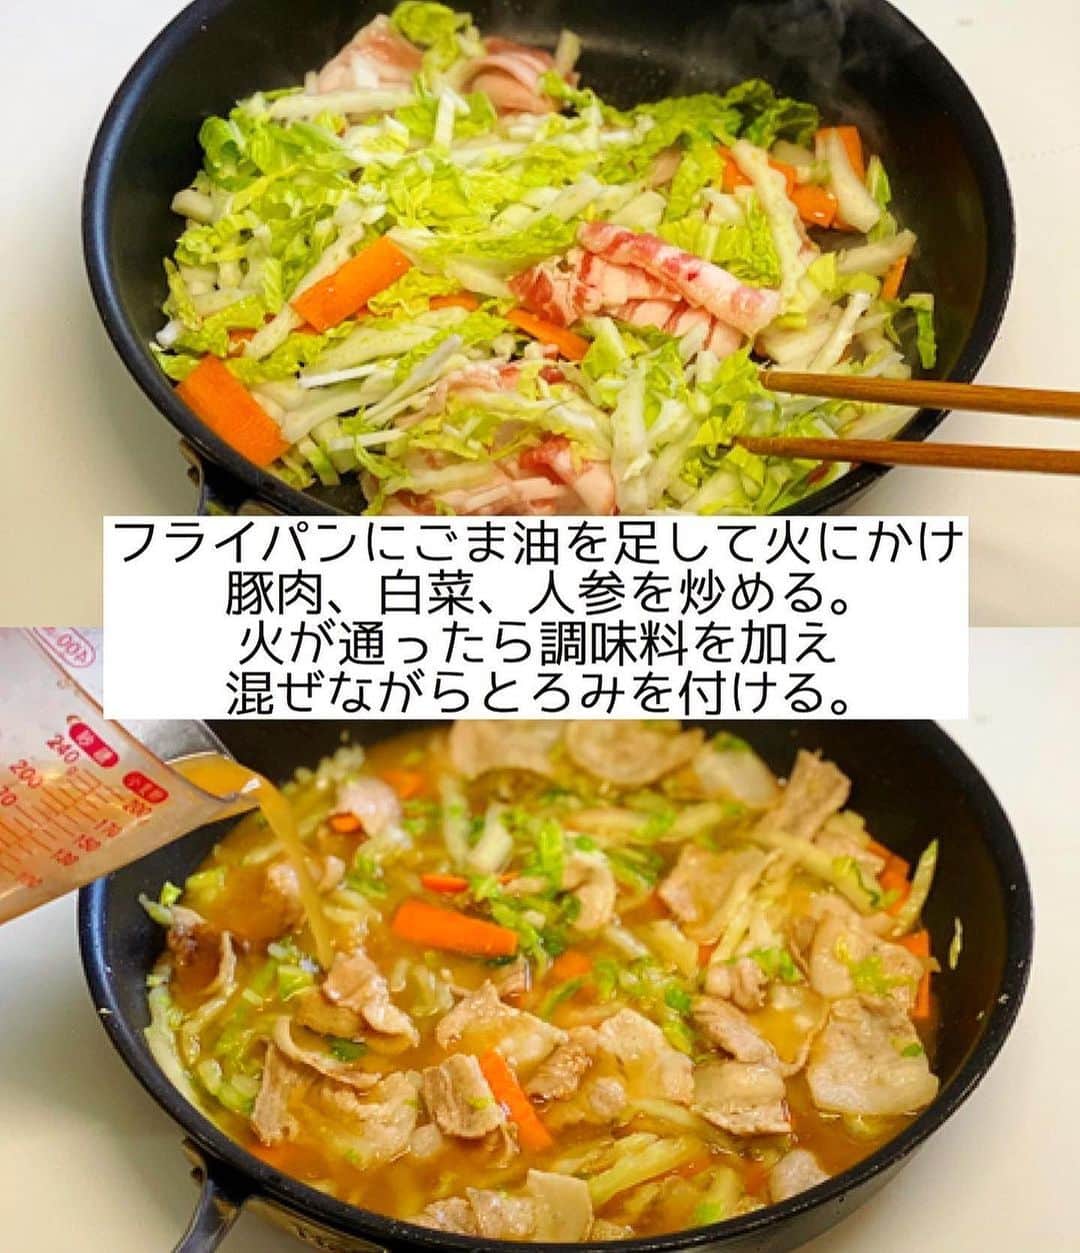 Mizuki【料理ブロガー・簡単レシピ】さんのインスタグラム写真 - (Mizuki【料理ブロガー・簡単レシピ】Instagram)「・フライパンひとつで🍳 ⁡ ［#レシピ ］ ーーーーーーーーーーーーーーーーー パリッと香ばし！あんかけ焼きそば ーーーーーーーーーーーーーーーーー ⁡ ⁡ ⁡ おはようございます☺️ ⁡ 今日ご紹介させていただくのは \ 豚肉と白菜のあんかけ焼きそば / (再掲載✨) ⁡ パリっと香ばしく焼いた麺に 具沢山のあんをかけて仕上げました💕 特別な材料なしでお手軽👌 フライパンひとつで とっても手軽にできますよ〜🍳 ⁡ コスパも抜群なので よかったらお試し下さいね😋 ⁡ ⁡ ⁡ ⋱⋰ ⋱⋰ ⋱⋰ ⋱⋰ ⋱⋰ ⋱⋰ ⋱⋰ 📍簡単・時短・節約レシピ更新中  Threadsもこちらから▼ @mizuki_31cafe ⁡ 📍謎の暮らし＆変なライブ垢 @mizuki_kurashi ⋱⋰ ⋱⋰ ⋱⋰ ⋱⋰ ⋱⋰ ⋱⋰ ⋱⋰ ⁡ ⁡ ⁡ ＿＿＿＿＿＿＿＿＿＿＿＿＿＿＿＿＿＿＿ 【2人分】 焼きそば...2玉 豚バラ薄切り肉...100g 白菜(又はキャベツ)...150g 人参...1/4本 ごま油...適量 ●水...200ml ●片栗粉・醤油・みりん...各大1 ●鶏がらスープ...小1 ⁡ 1.焼きそばは袋の上から揉んでほぐす。豚肉は3cm幅に切る。白菜は細切りにする。人参は短冊切りにする。●は合わせておく。 2.フライパンにごま油大1を強火で熱し、焼きそばを入れる。フライ返しで押さえながら両面焼き色が付くまで焼き、器に盛る。 3.そのままのフライパンにごま油小1を足して中火にかけ、豚肉、白菜、人参を炒める。火が通ったら●を加え、混ぜながらとろみを付けて2にかける。 ￣￣￣￣￣￣￣￣￣￣￣￣￣￣￣￣￣￣￣ ⁡ ⁡ 《ポイント》 ♦︎麺は押さえながら焼き色が付くまで焼きます♩ ♦︎調味料はよく混ぜてから加え、混ぜながら加熱して下さい♩ ♦︎豚バラの代わりに豚こまを使っても♩ ⁡ ⁡ ⁡ ⁡ ⁡ ⁡ ⋱⋰ ⋱⋰ ⋱⋰ ⋱⋰ ⋱⋰ ⋱⋰ ⋱⋰  愛用している調理器具・器など   #楽天ROOMに載せてます ‎𐩢𐩺  (ハイライトから飛べます🕊️) ⋱⋰ ⋱⋰ ⋱⋰ ⋱⋰ ⋱⋰ ⋱⋰ ⋱⋰ ⁡ ⁡ ⁡ ⁡ ⁡ ✼••┈┈┈┈┈••✼••┈┈┈┈┈••✼ 今日のごはんこれに決まり！ ‎𓊆#Mizukiのレシピノート 500品𓊇 ✼••┈┈┈┈┈••✼••┈┈┈┈┈••✼ ⁡ ˗ˏˋ おかげさまで25万部突破 ˎˊ˗ 料理レシピ本大賞準大賞を受賞しました✨ ⁡ 6000点の中からレシピを厳選し まさかの【500レシピ掲載】 肉や魚のメインおかずはもちろん 副菜、丼、麺、スープ、お菓子 ハレの日のレシピ、鍋のレシピまで 全てこの一冊で完結 𓌉◯𓇋 (全国の書店・ネット書店で発売中) ⁡ ⁡ ⁡ ⁡ ⁡ ⁡ #あんかけ焼きそばm #あんかけ焼きそば #白菜  #白菜レシピ #キャベツ  #キャベツレシピ #ランチ #豚肉  #焼きそば #節約料理  #簡単料理  #時短料理 #mizukiレシピ  #時短レシピ #節約レシピ #簡単レシピ」10月17日 6時29分 - mizuki_31cafe